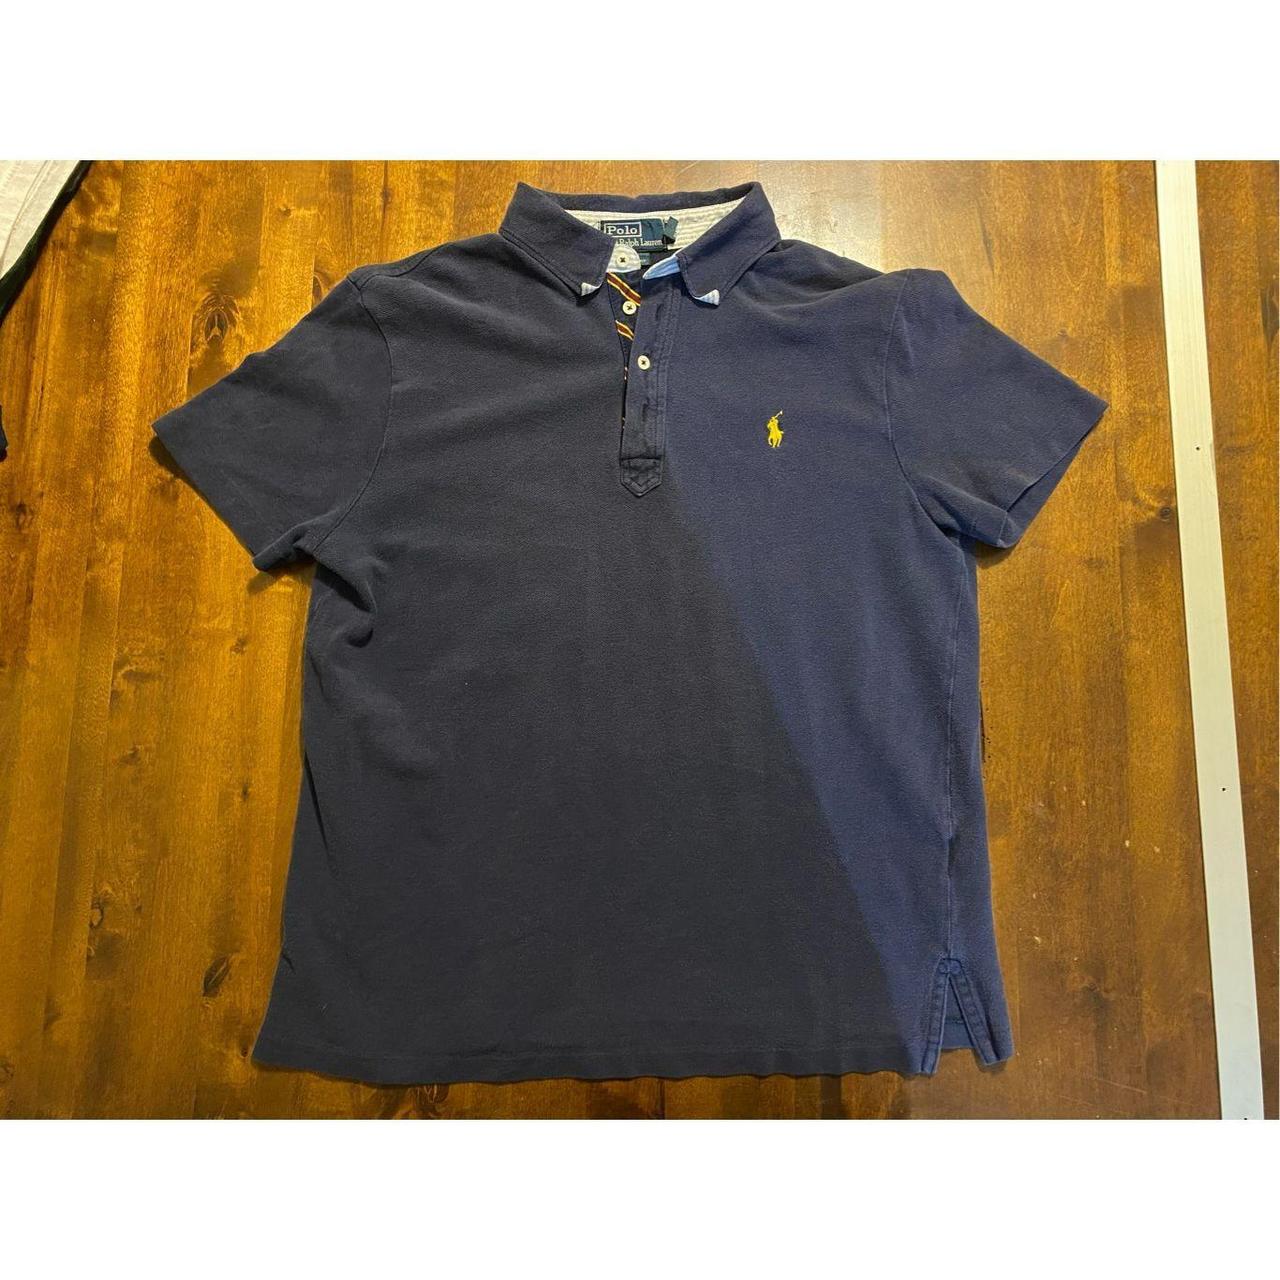 Ralph Lauren Mens Polo Shirt Size Large Navy Blue... - Depop